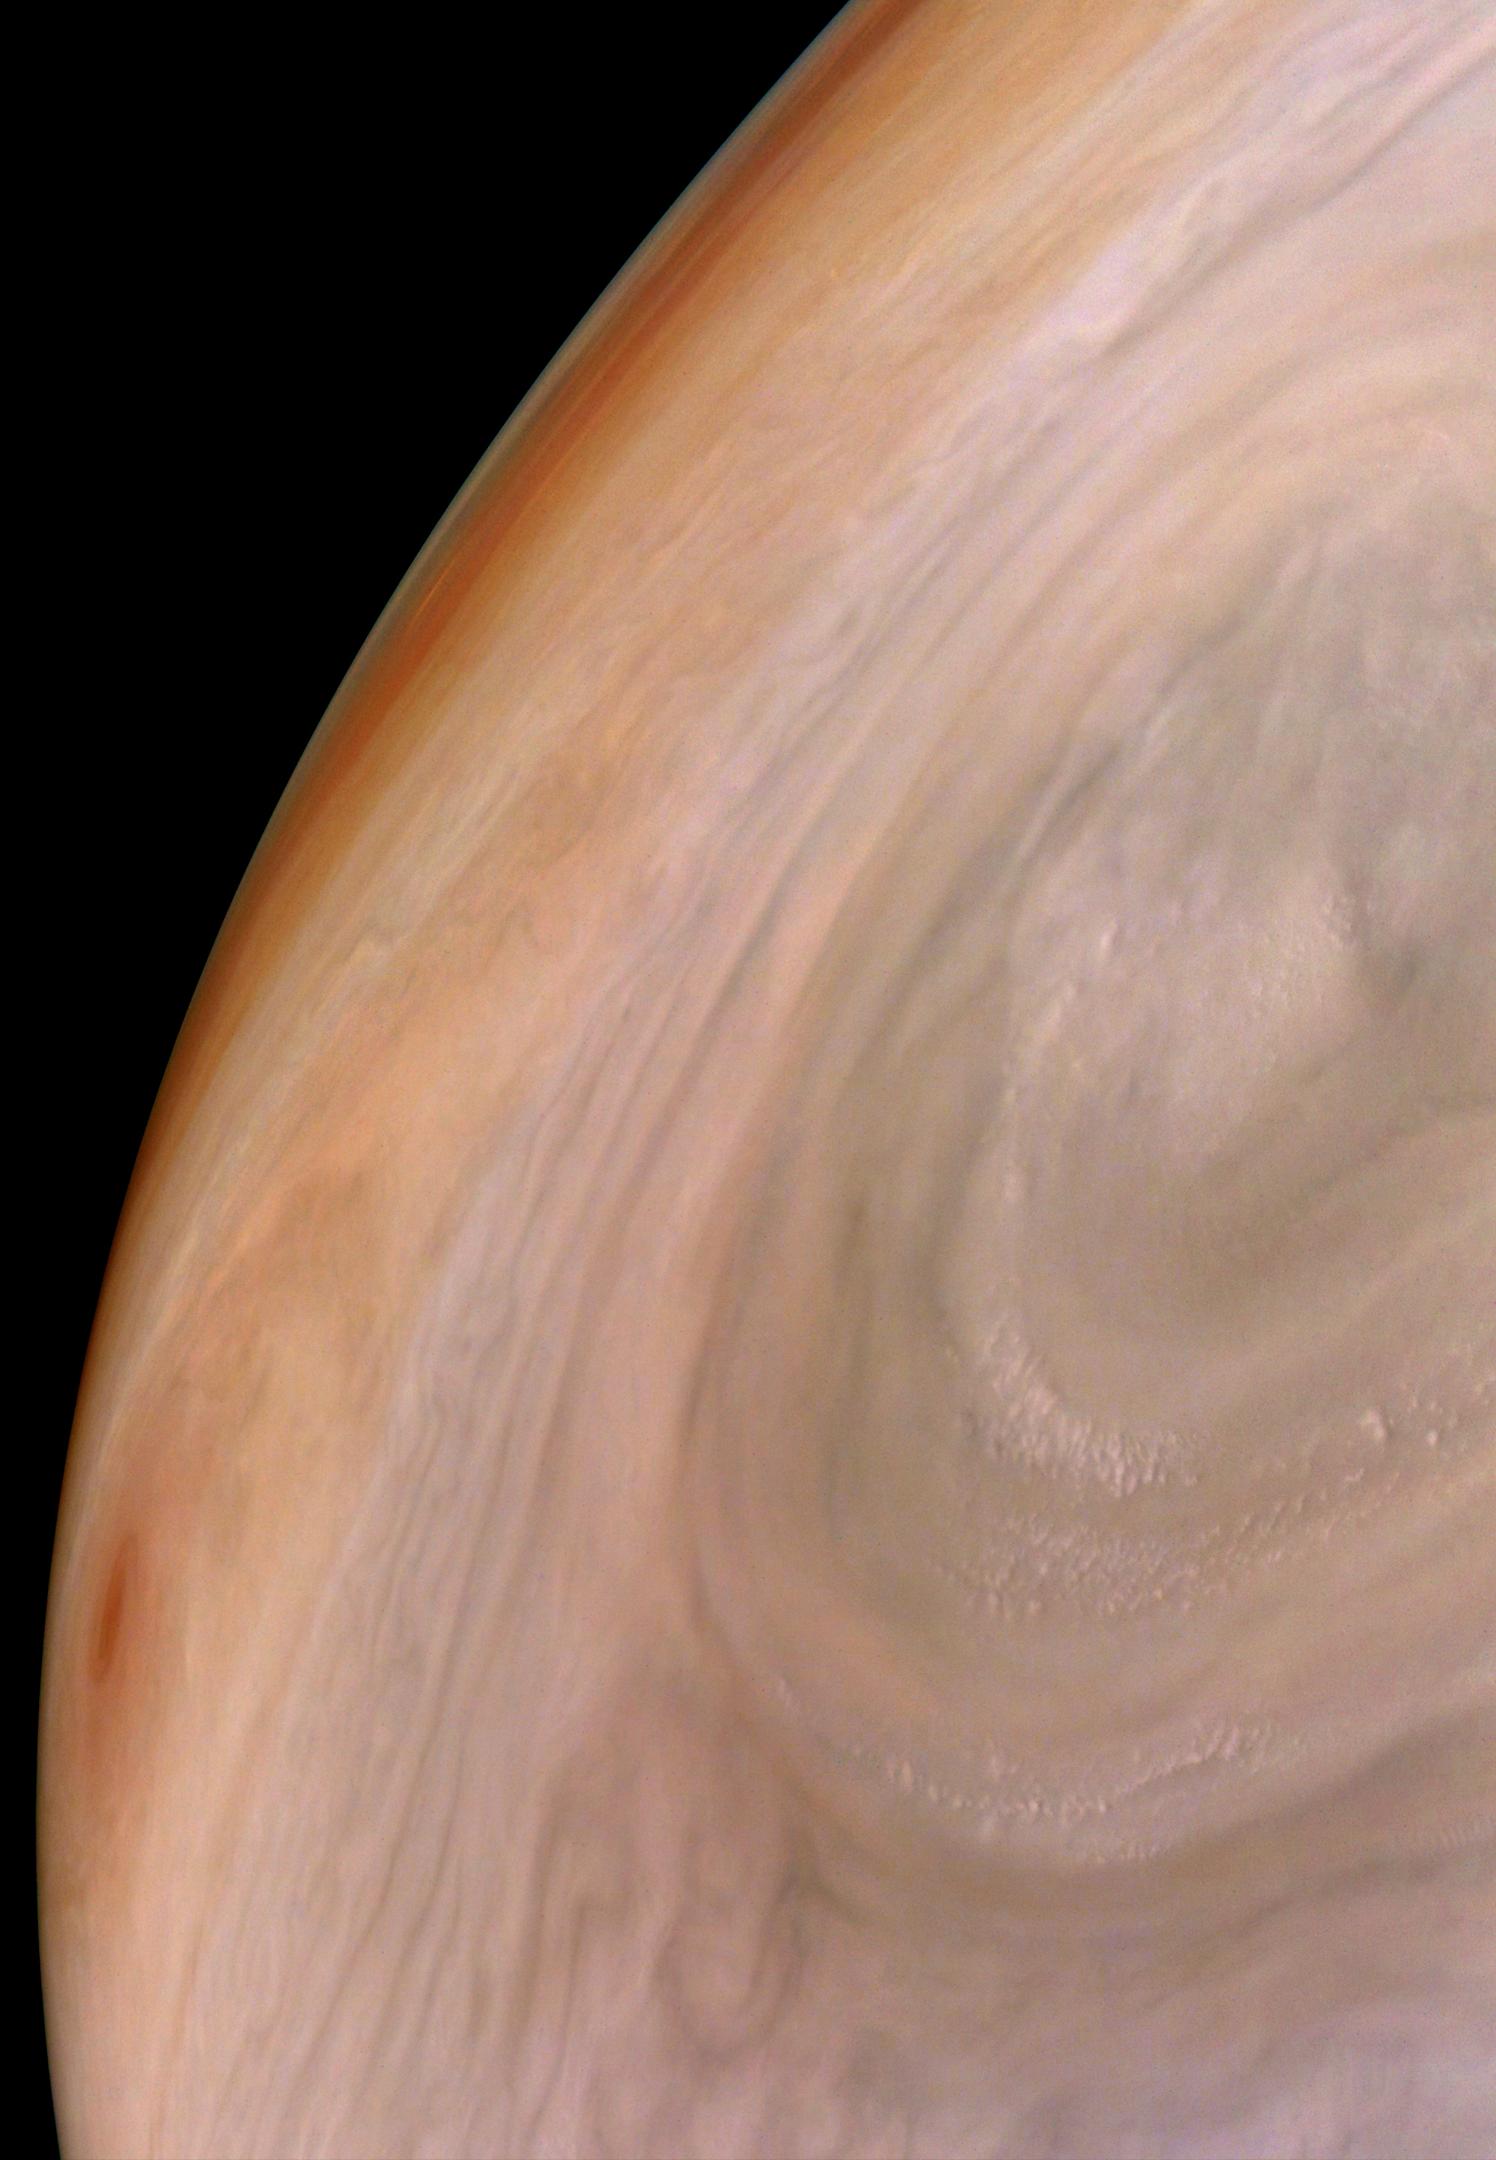 PIA24973: Jupiter's Bands of Color